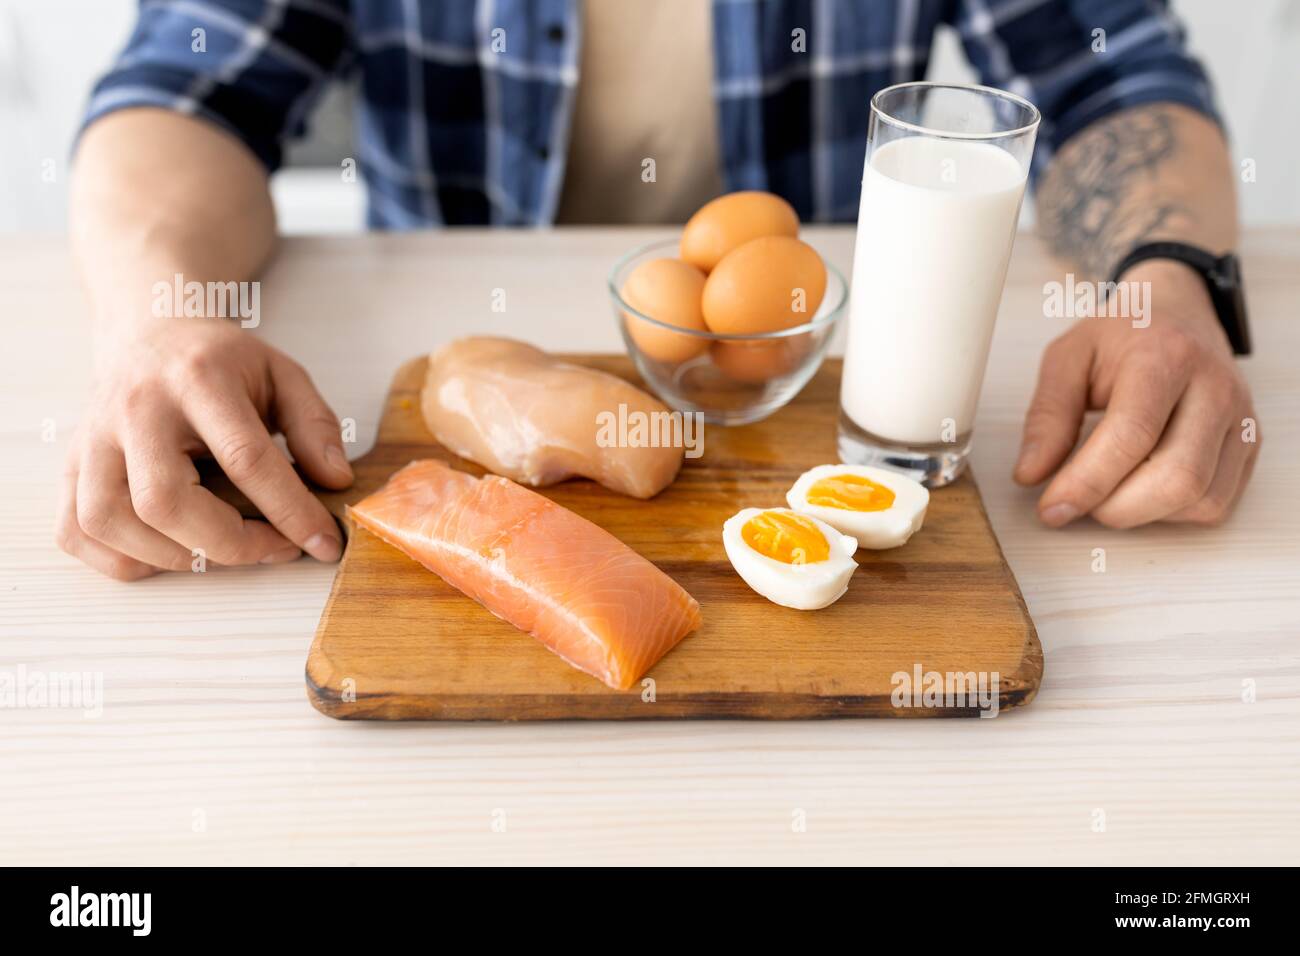 Mangiare sano. Uomo che prepara la colazione, seduto a tavola con filetto di carne crudo, pesce, latte e uova su tavola di legno Foto Stock